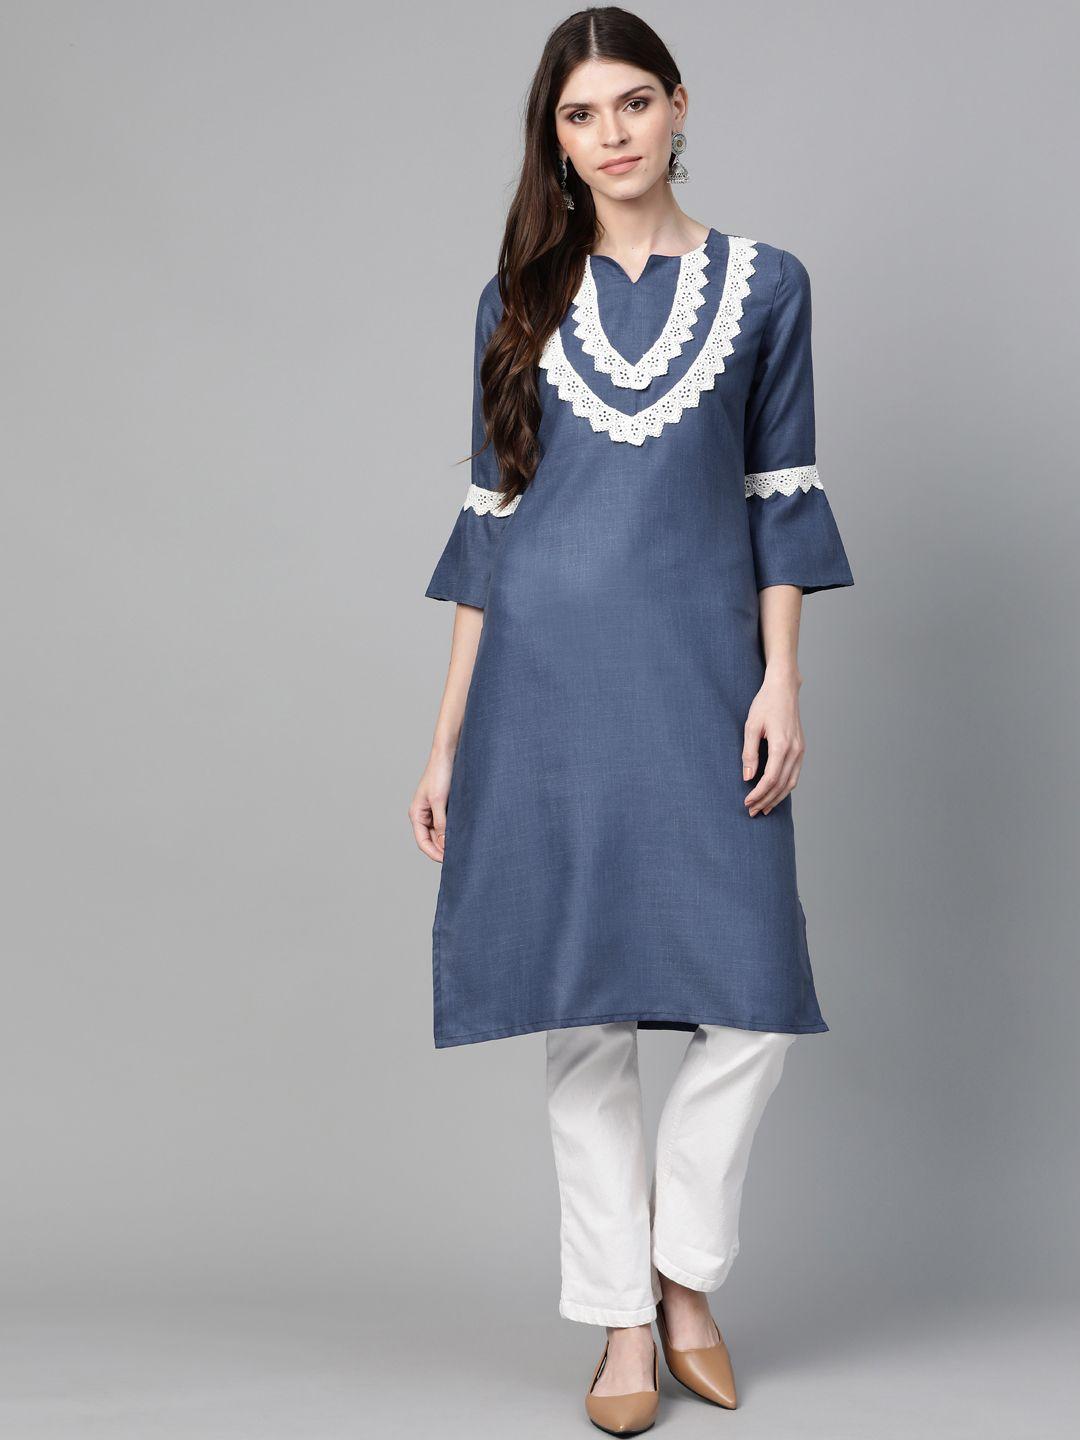 bhama couture women navy blue yoke design straight kurta